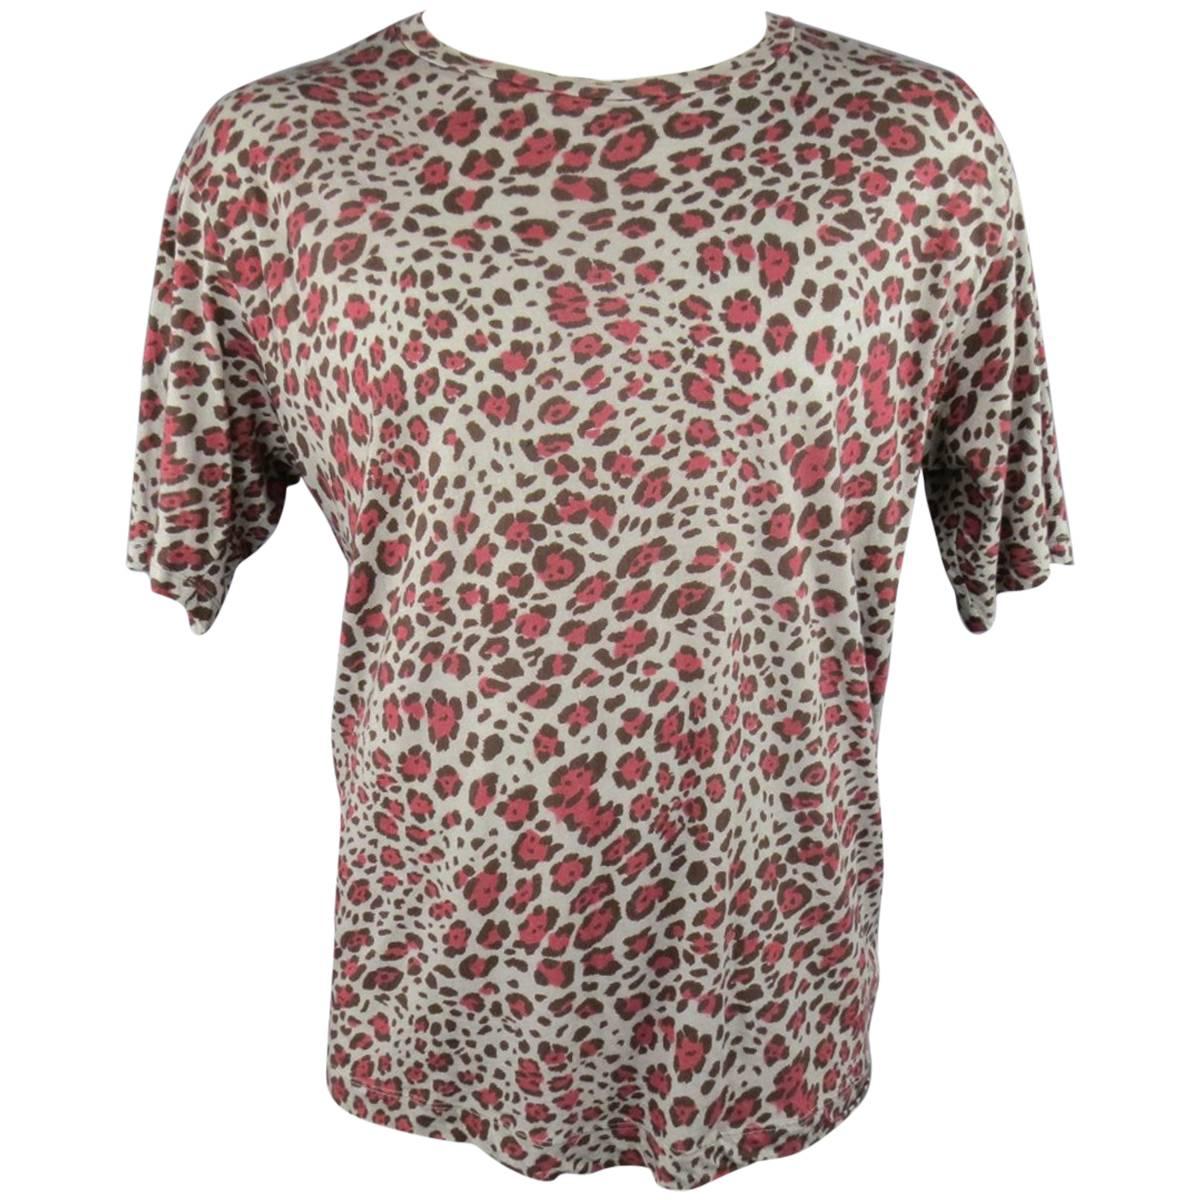 DRIES VAN NOTEN Size XL Red & Gray Leopard Cheetah Print Cotton T-shirt